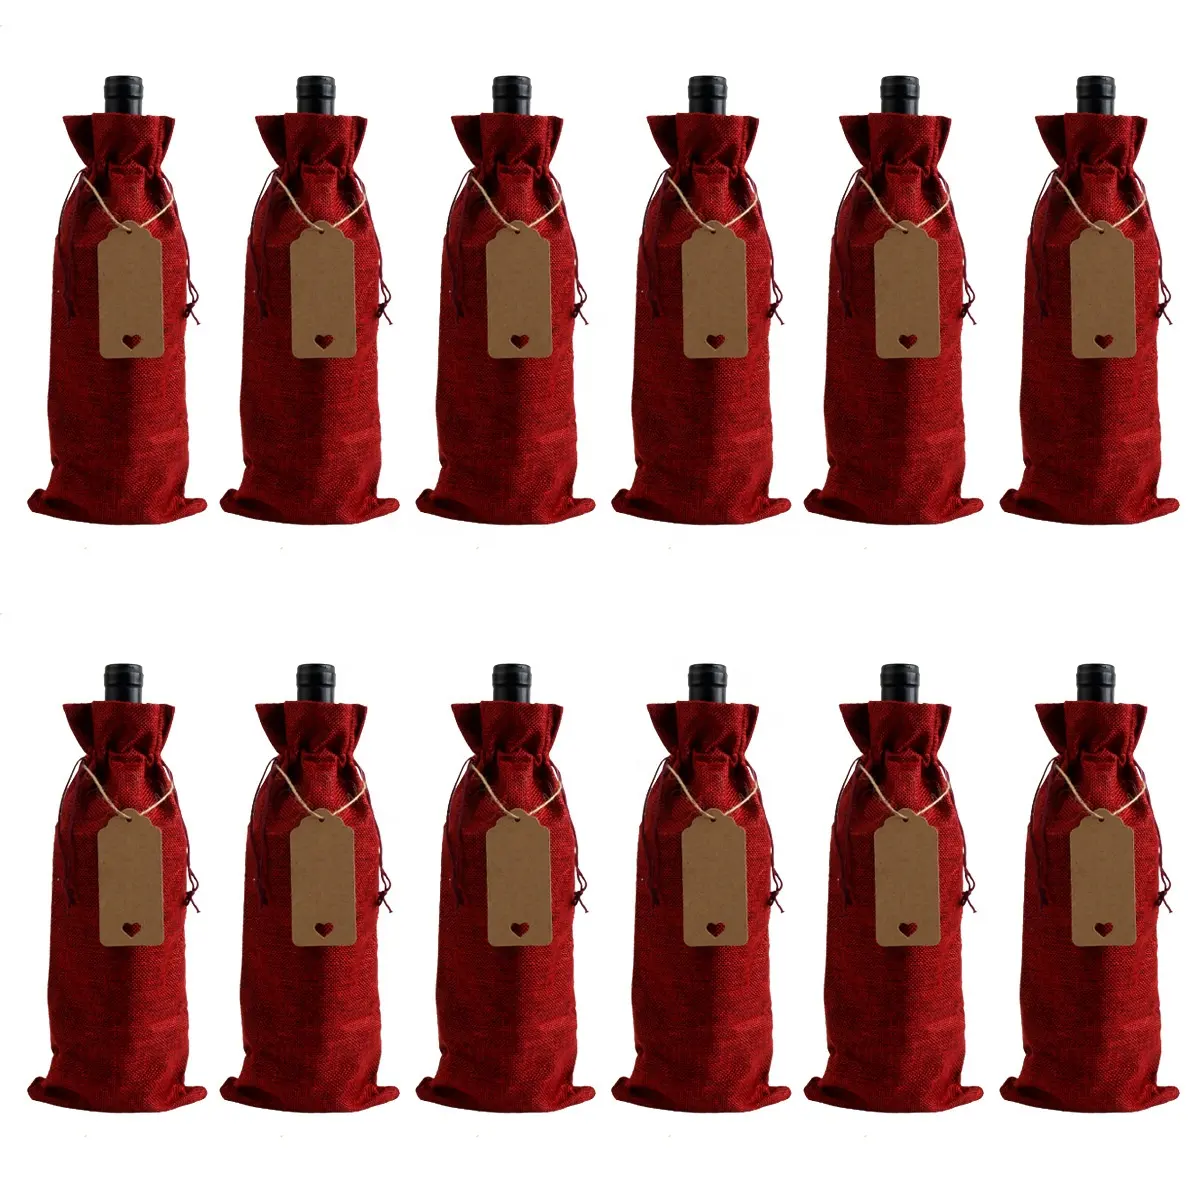 WETRUST sacchetti di vino riutilizzabili in tela sacchetti regalo di vino rosso con coulisse